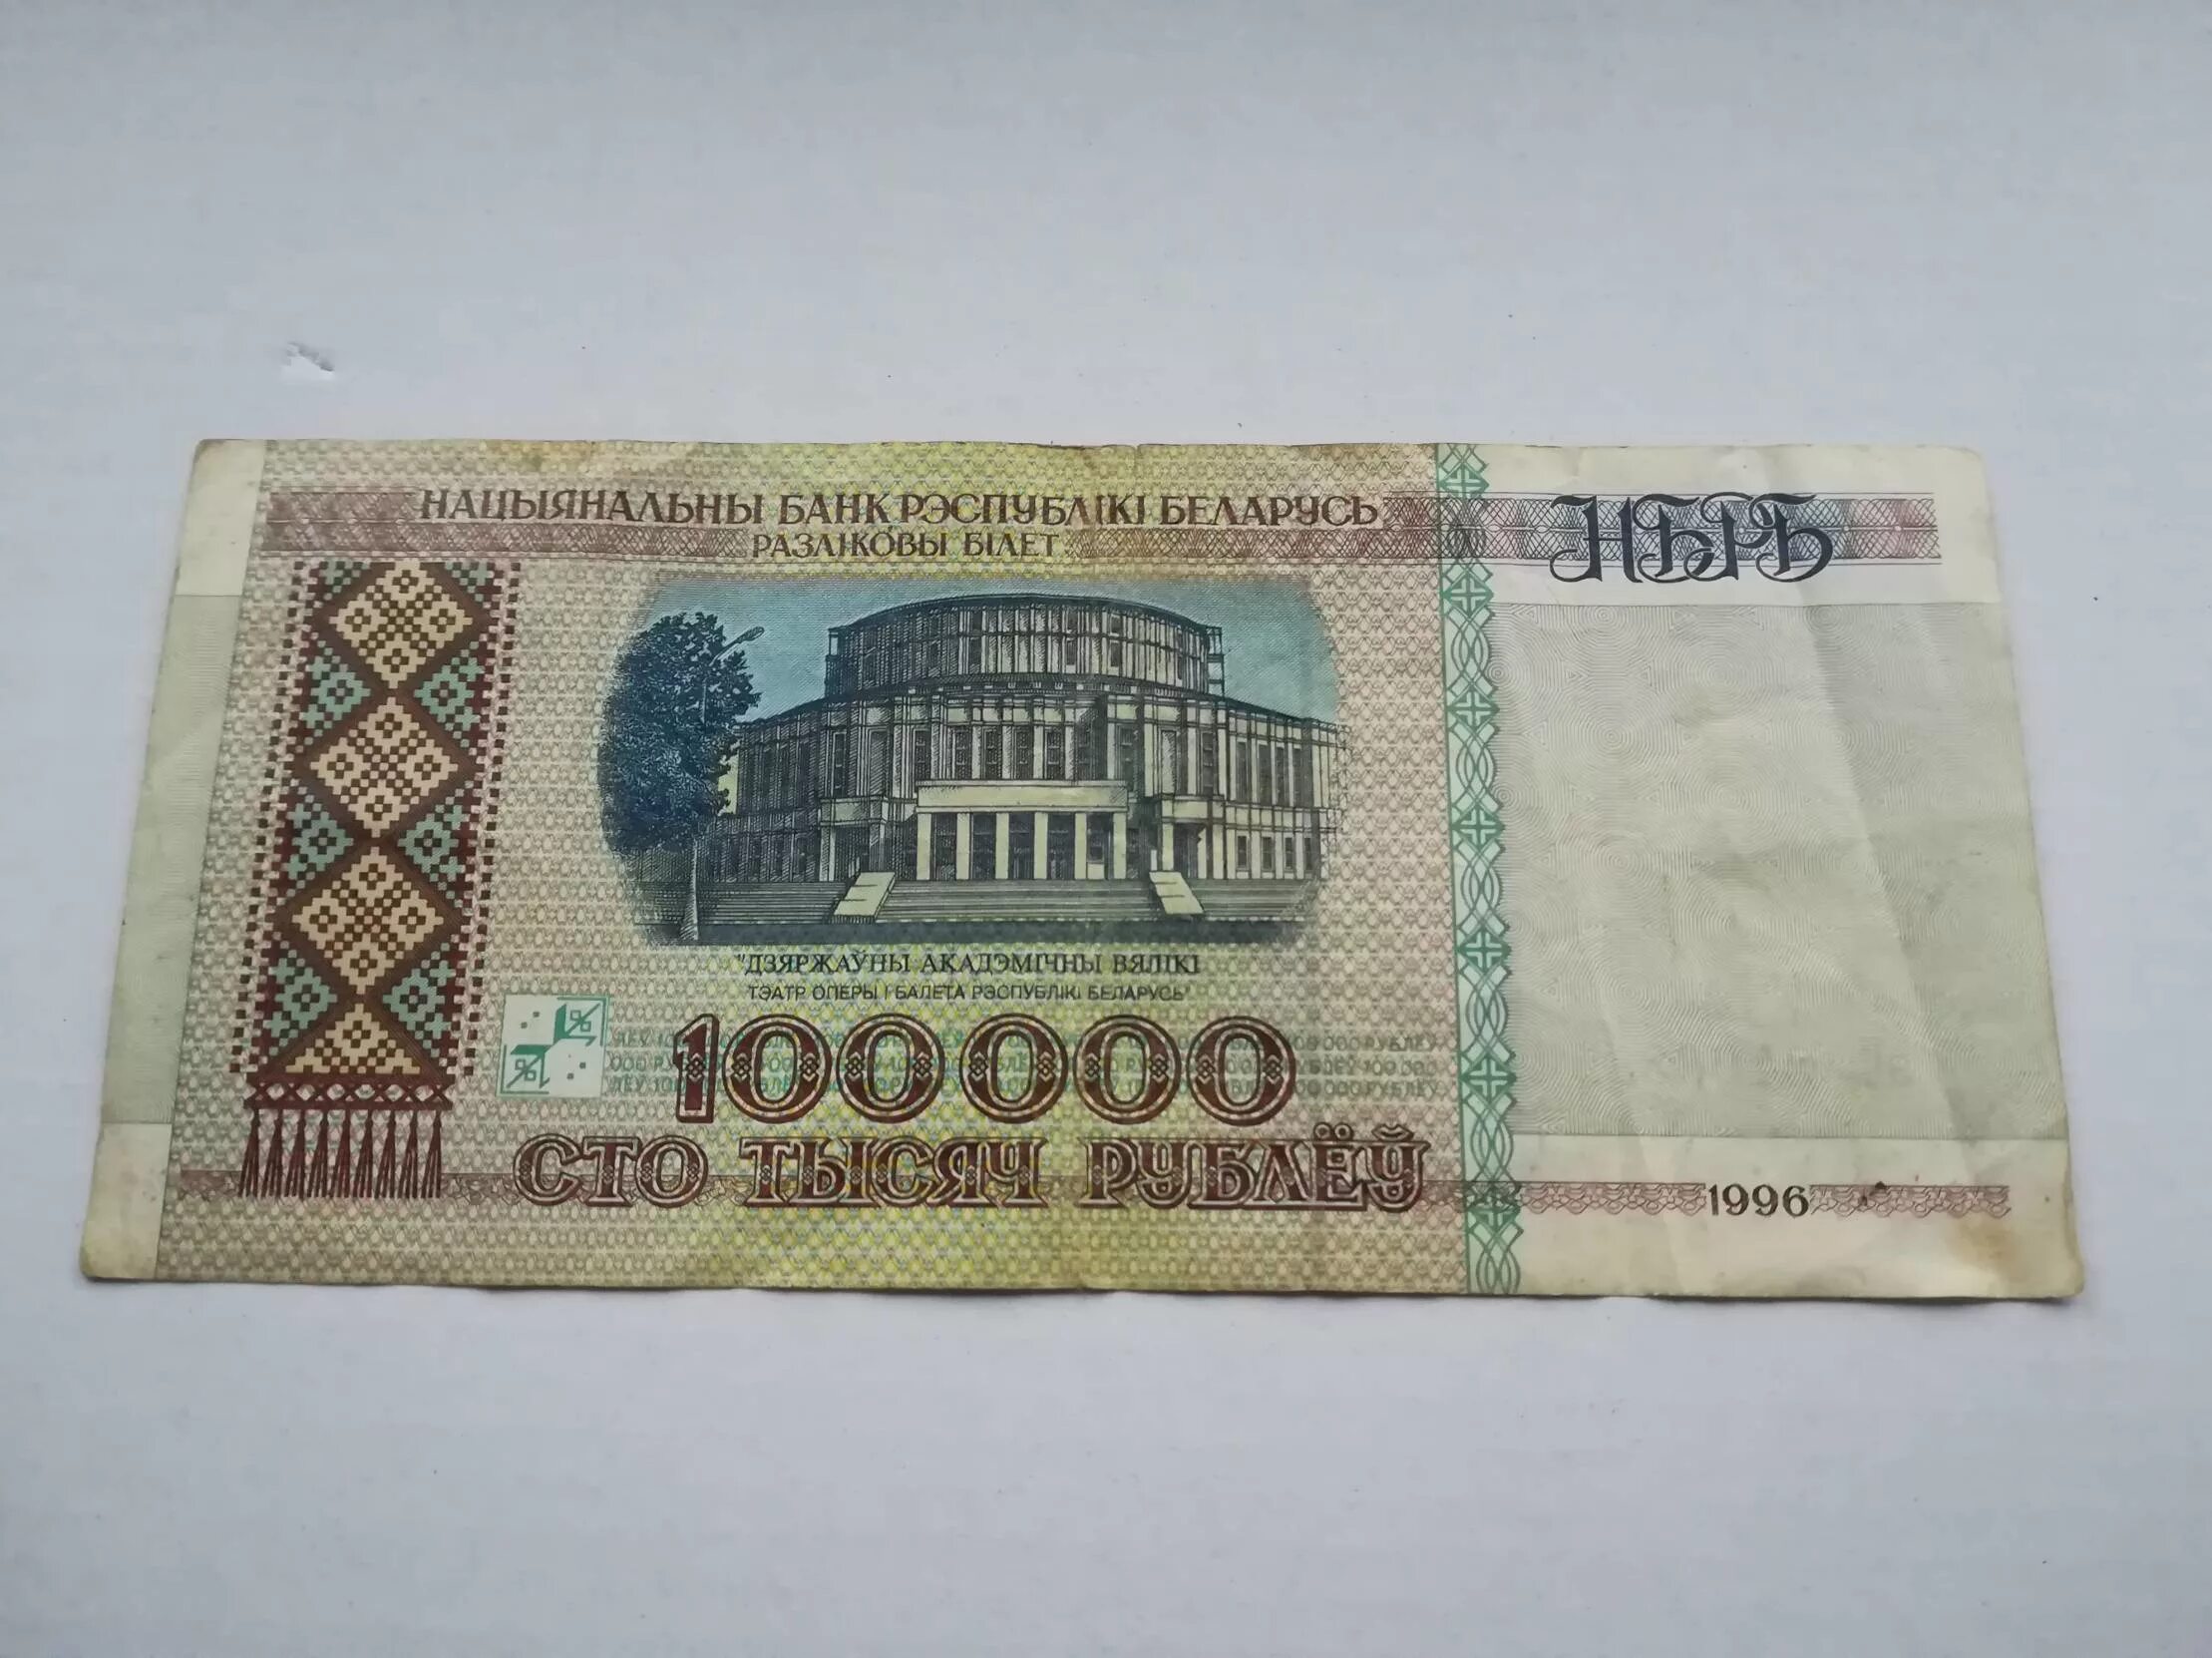 100.000 Белорусских руб 1996 год. 100000 Белорусских рублей 1996 года. Купюра 100 рублей 1996. СТО тысяч рублей купюра 1996 года.